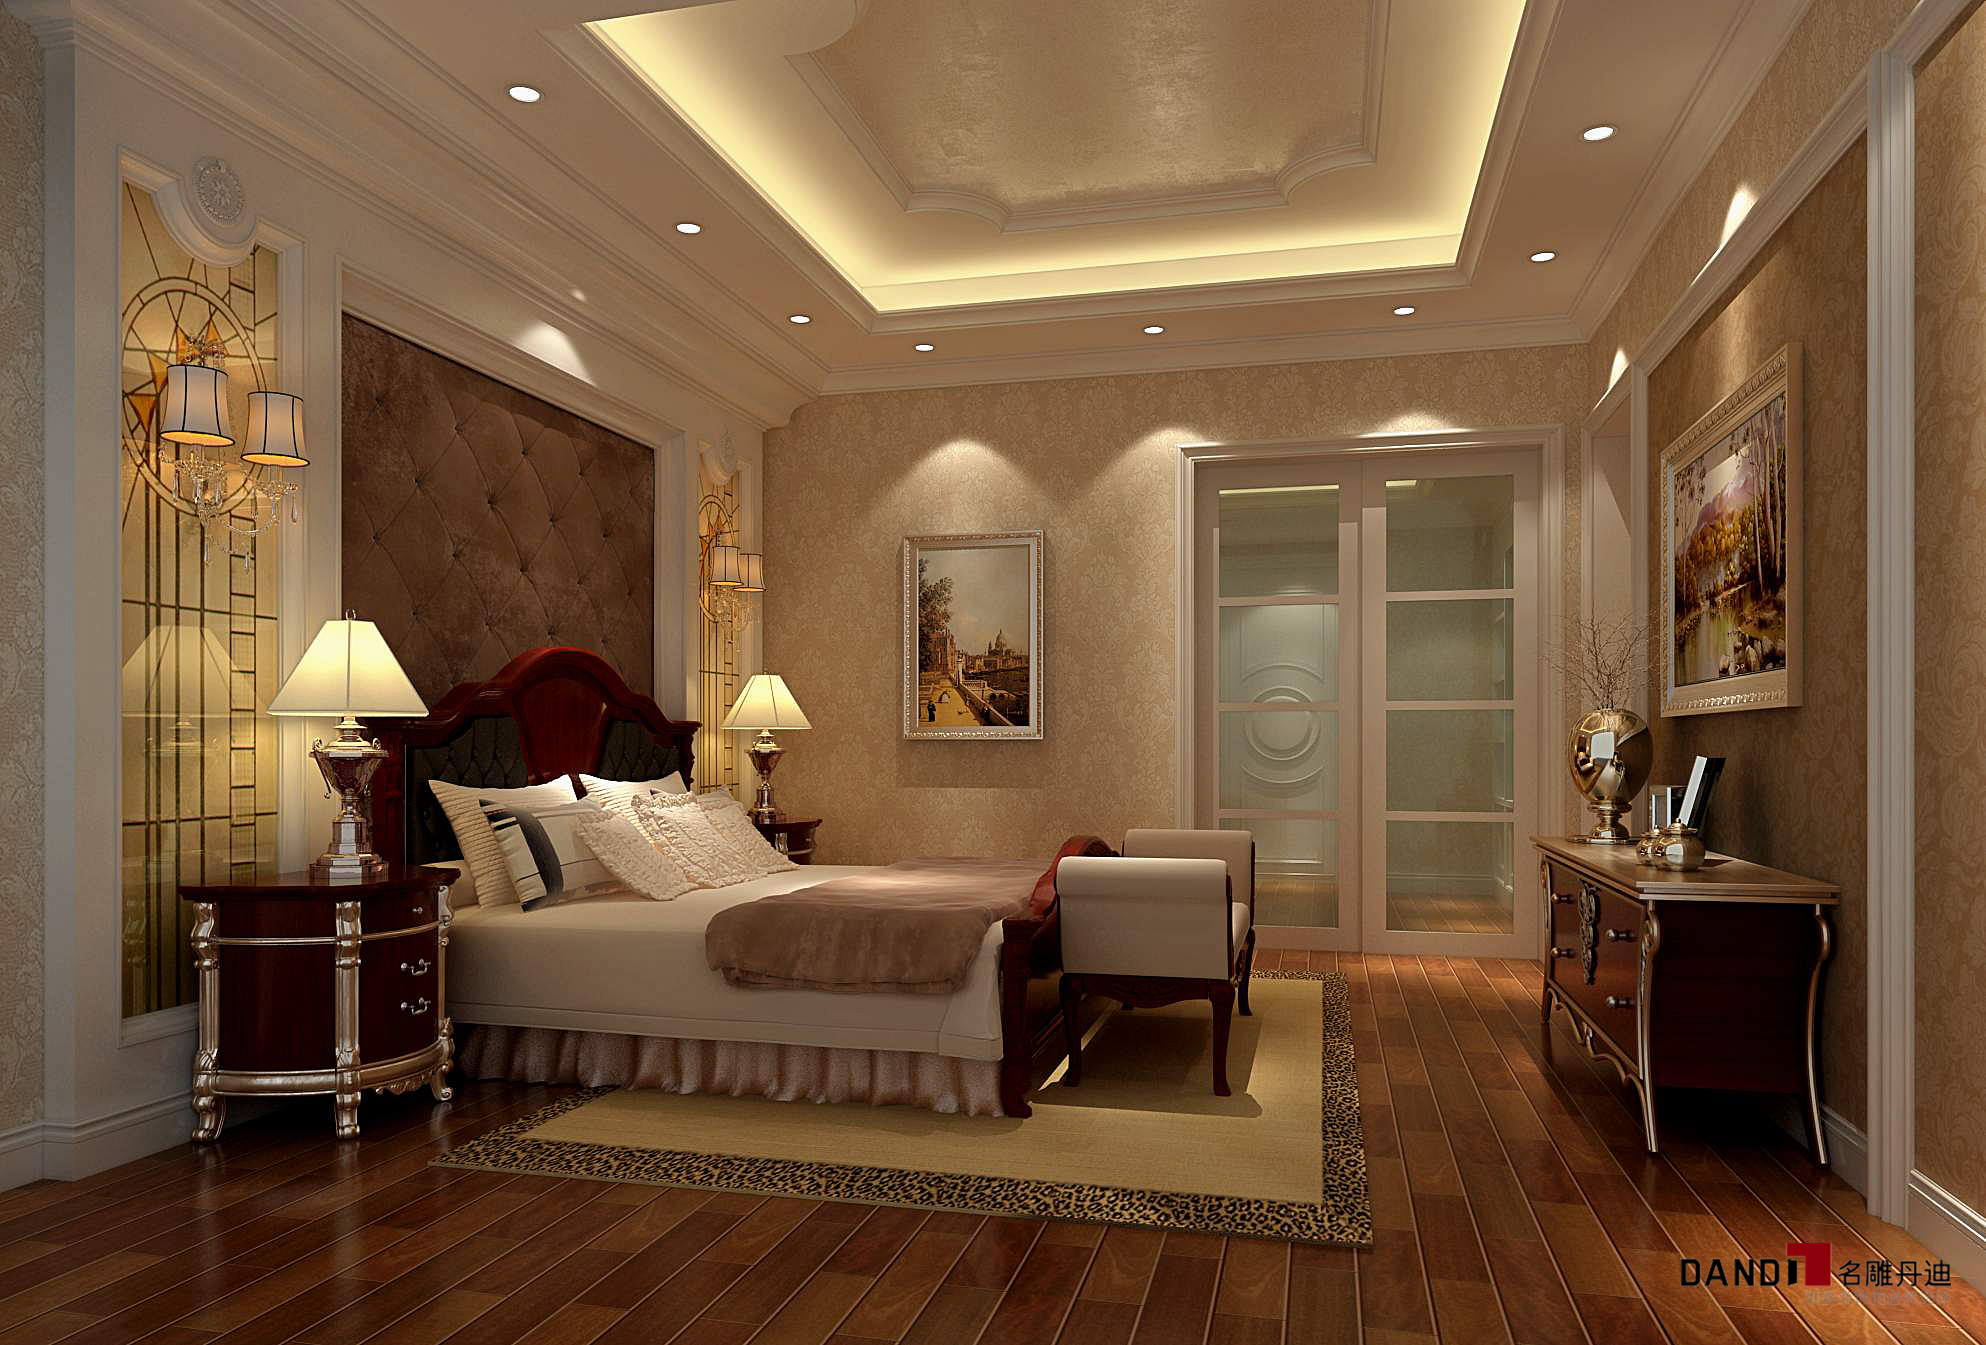 欧式 别墅 高富帅 名雕丹迪 奢华 卧室 卧室图片来自名雕丹迪在欧式风格—300平奢华别墅装修的分享